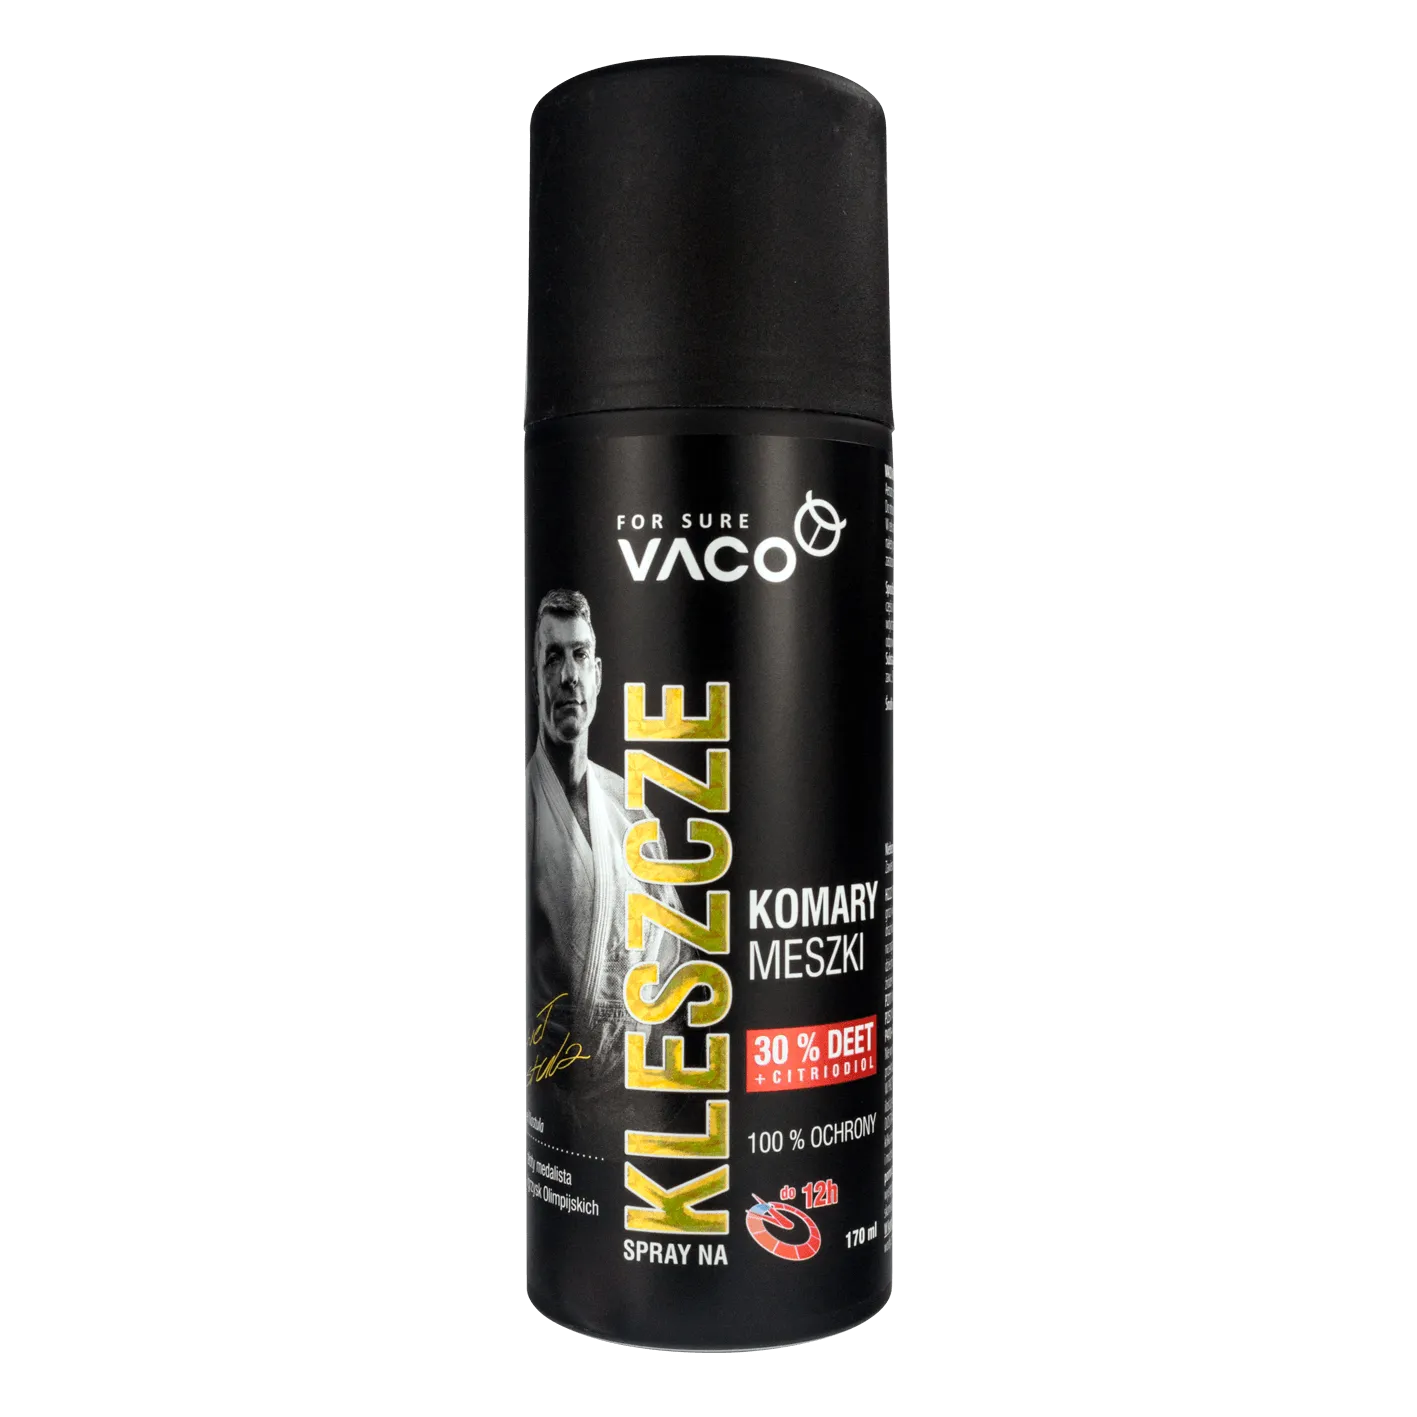 VACO STRONG Spray na kleszcze komary i meszki, 170 ml 